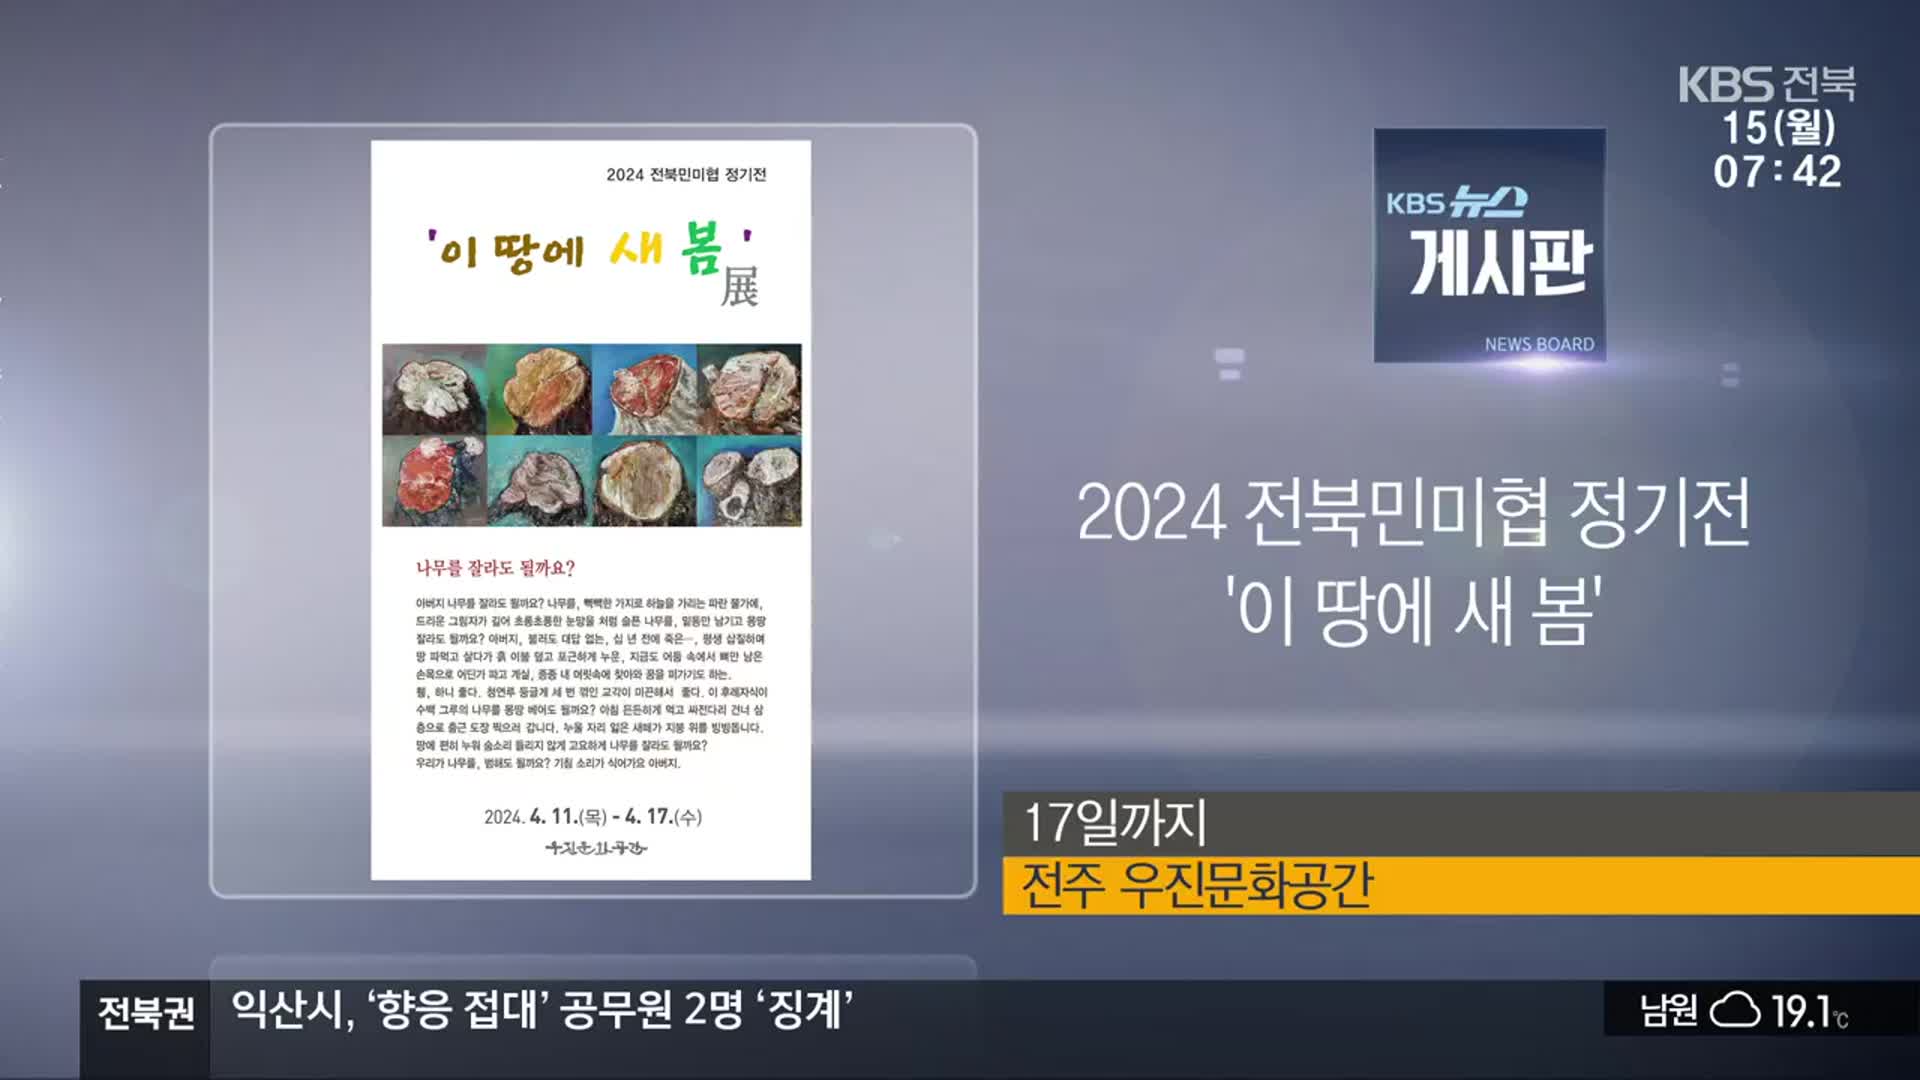 [게시판] 2024 전북민미협 정기전 ‘이 땅에 새 봄’ 외